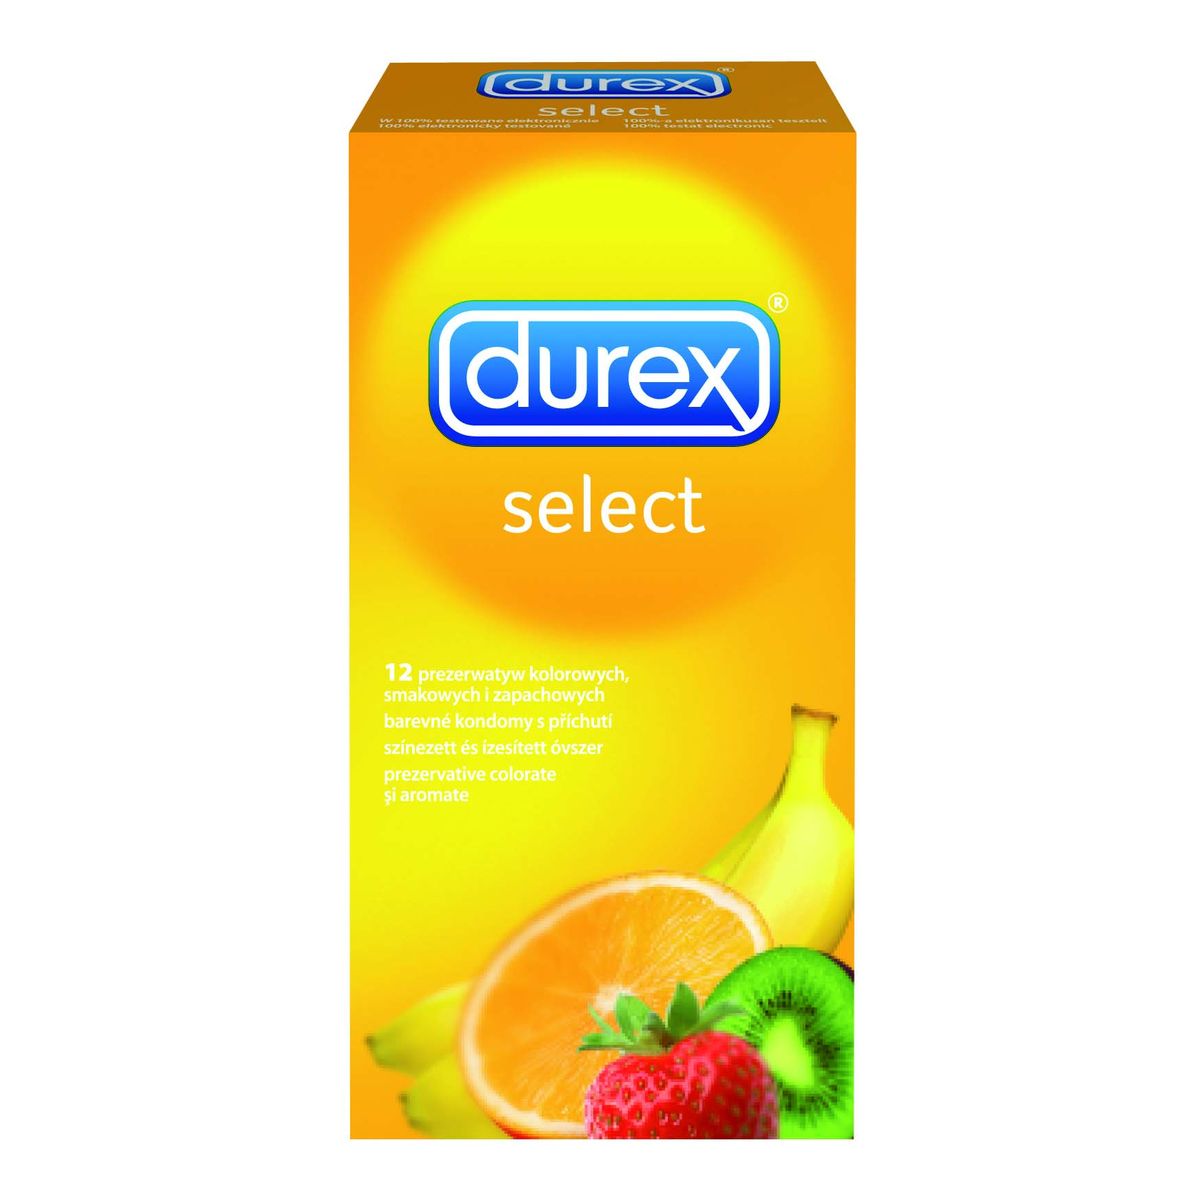 Durex Select Prezerwatywy Zapachowe 12szt.